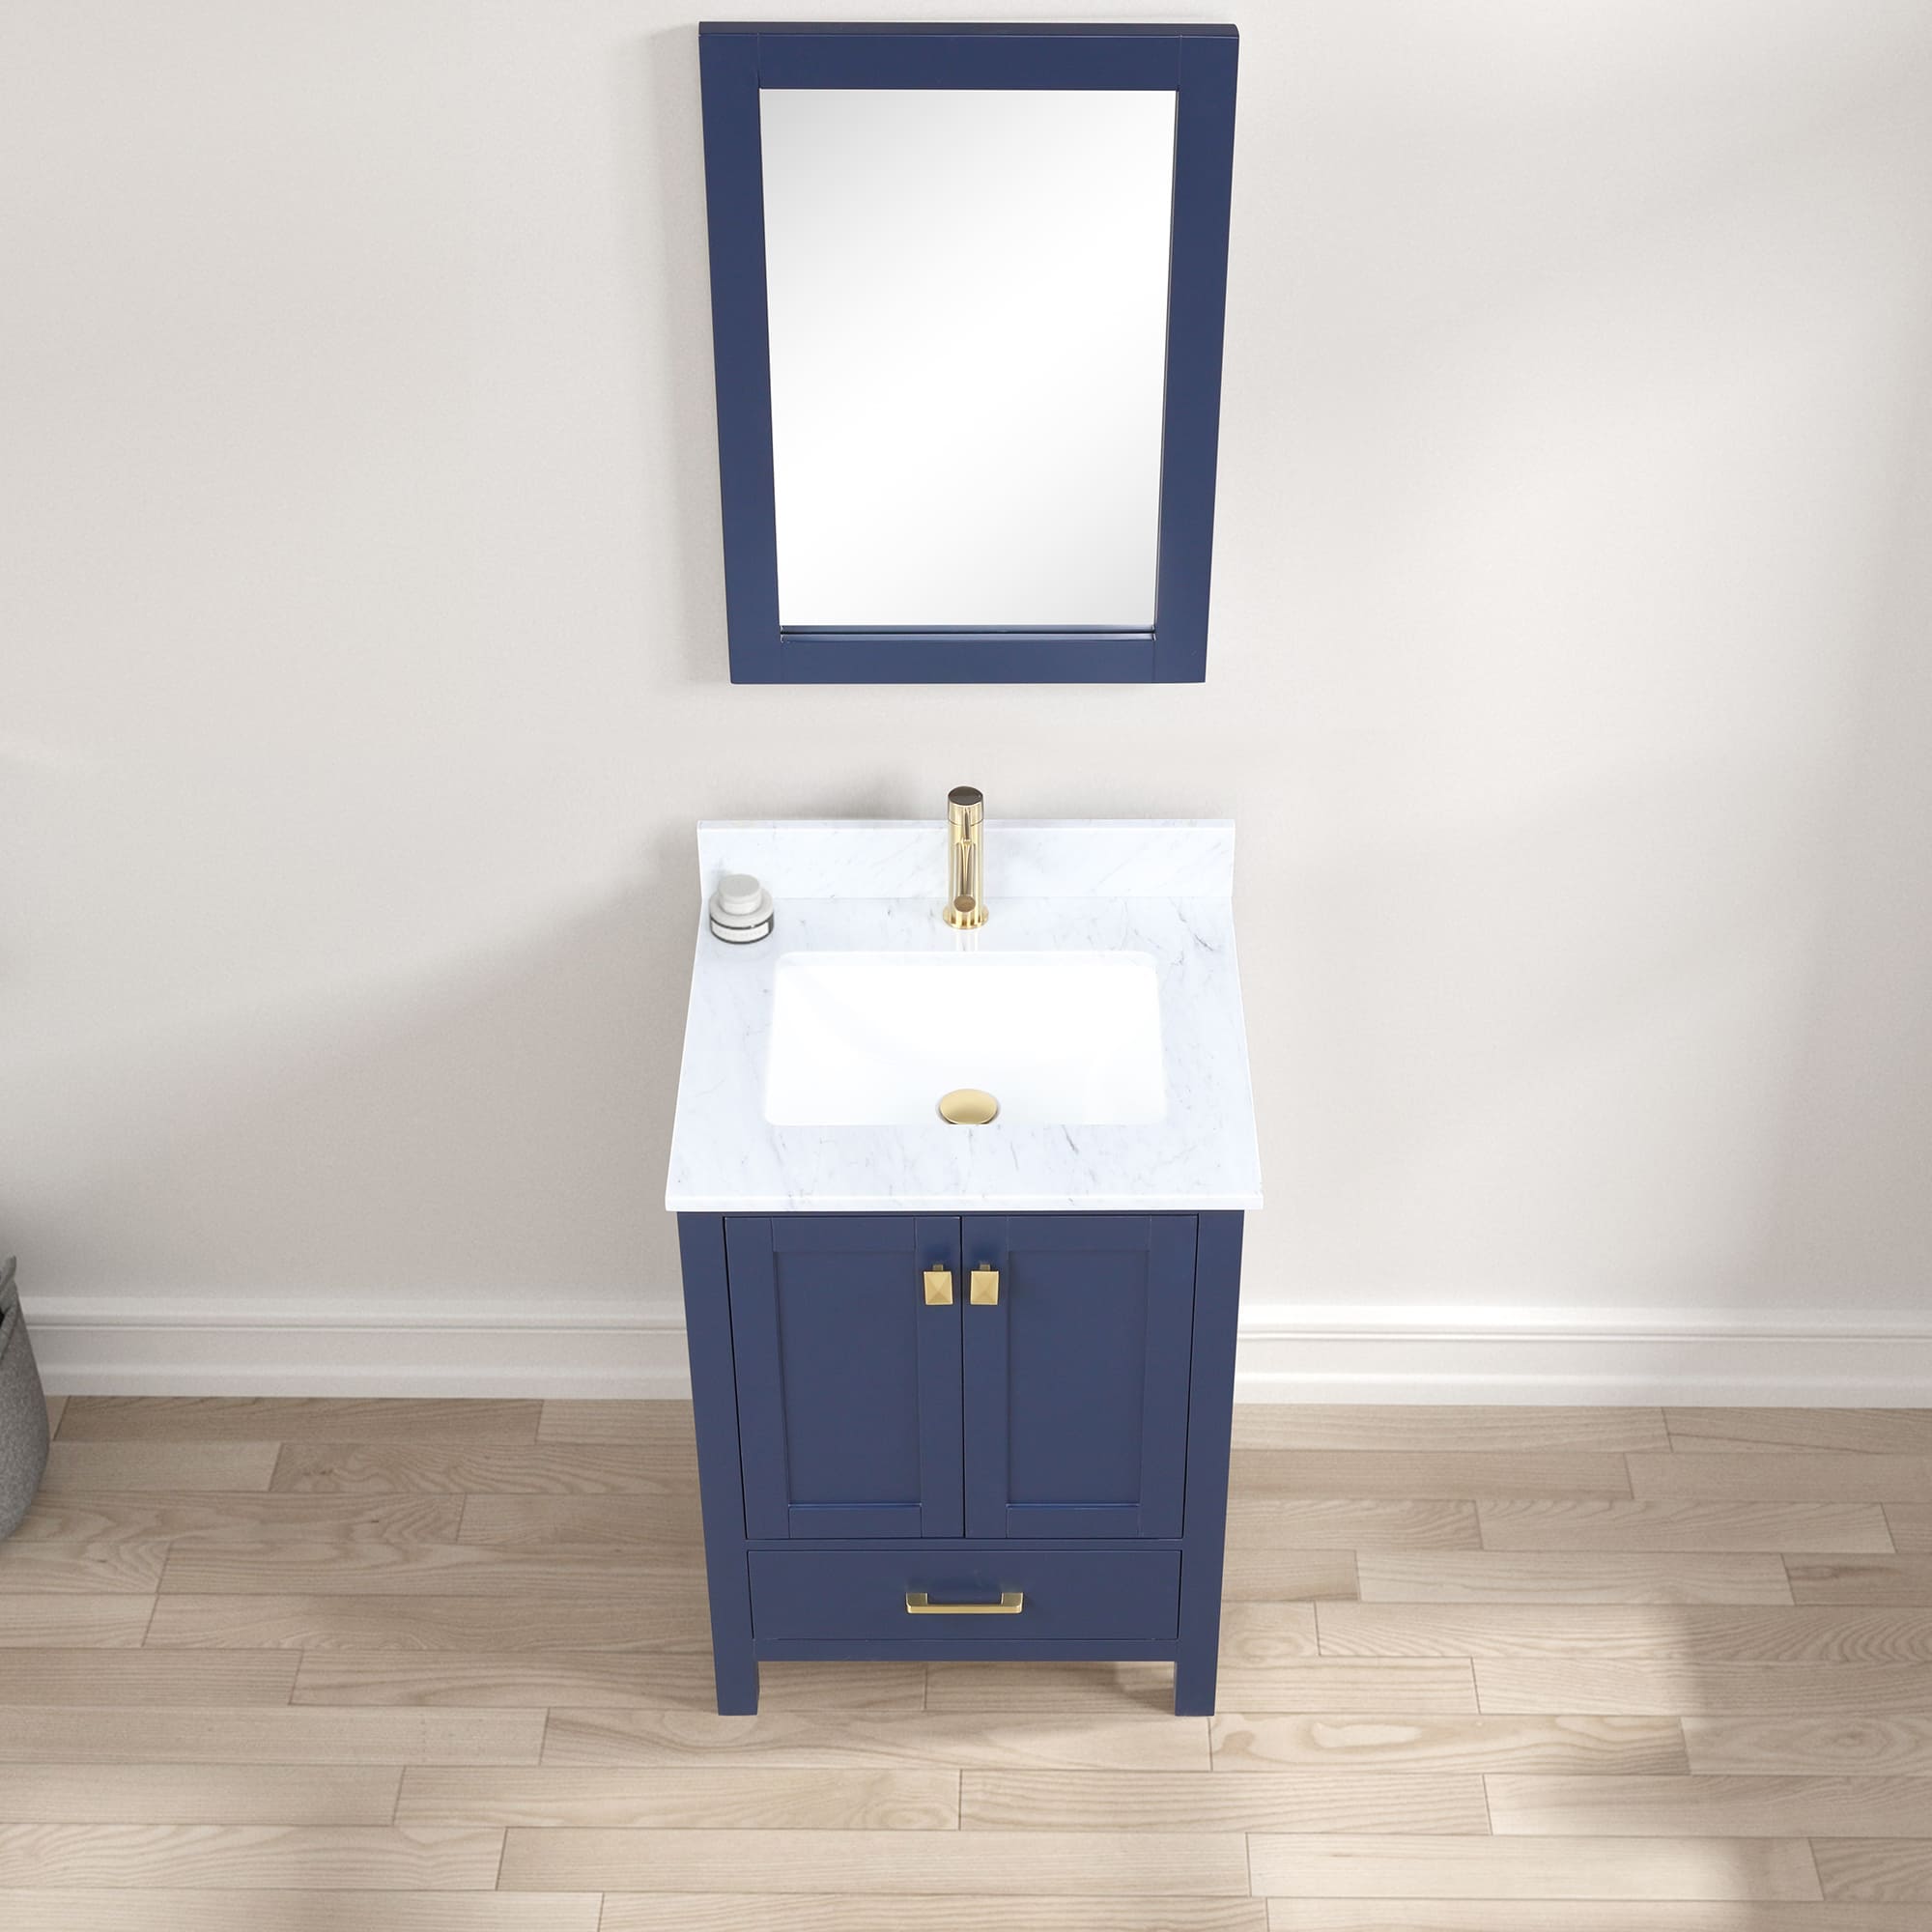 Geneva 24" Bathroom Vanity  #size_24"  #color_navy blue